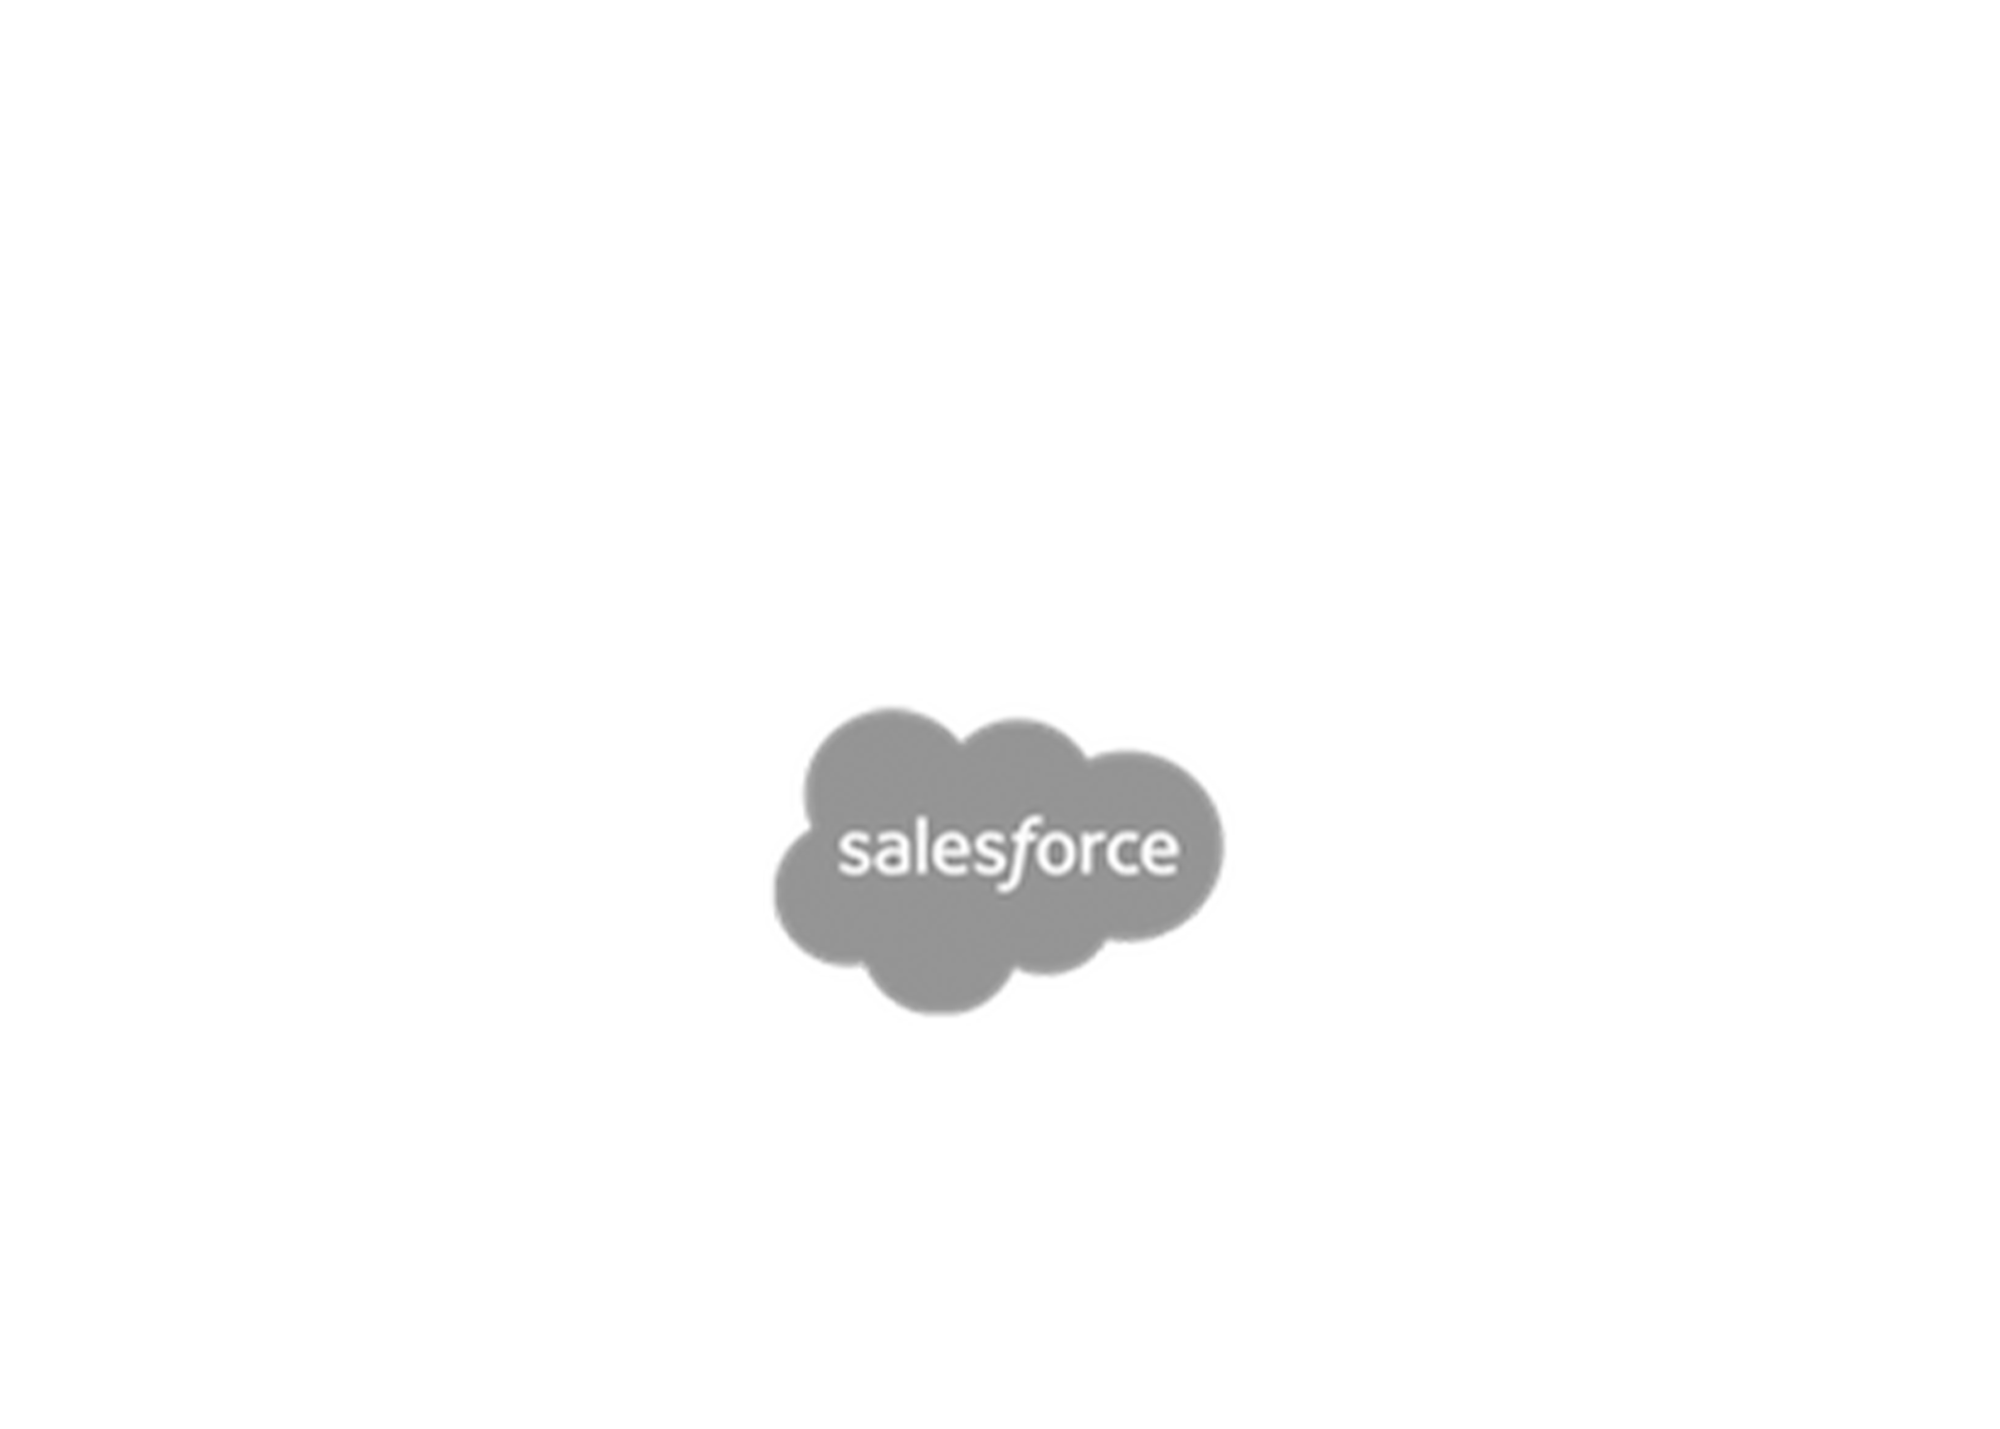 salesforce-logo-grey.png